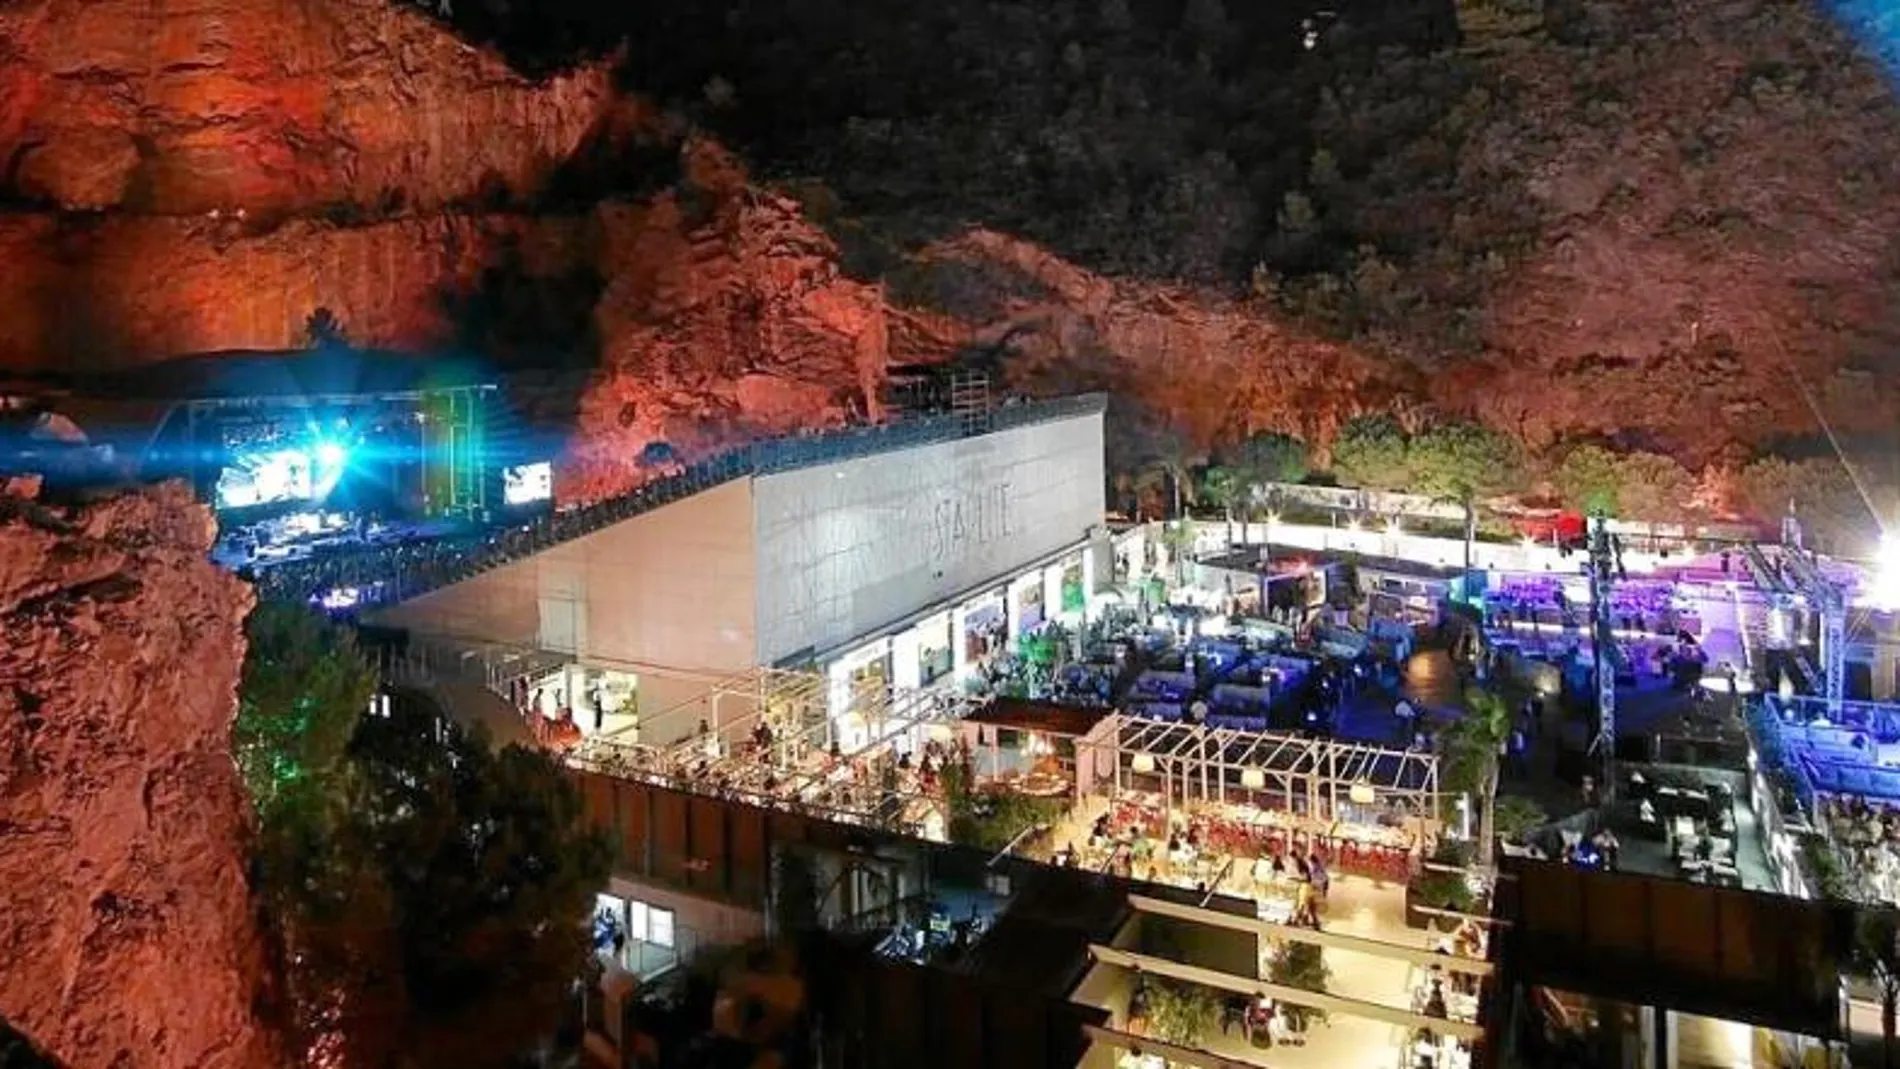 El festival Starlite se celebra en un enclave único: un reducido anfiteatro de roca al aire libre en la cantera de Nagüeles con una acústica excepcional